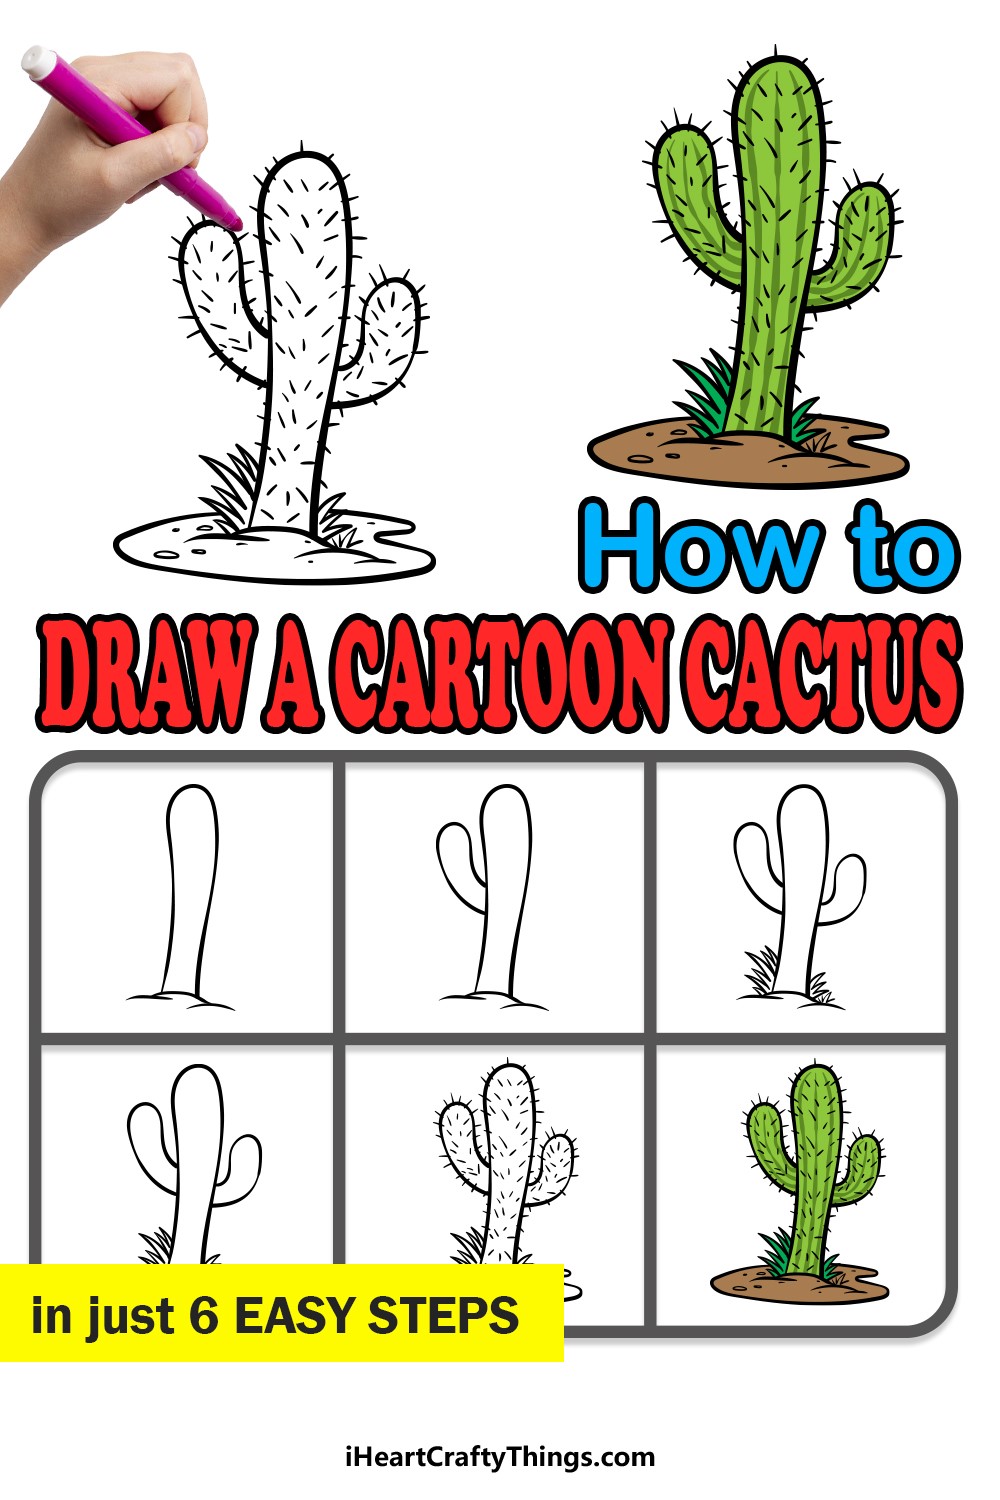 Kaktus-Idee 8 zeichnen ideen